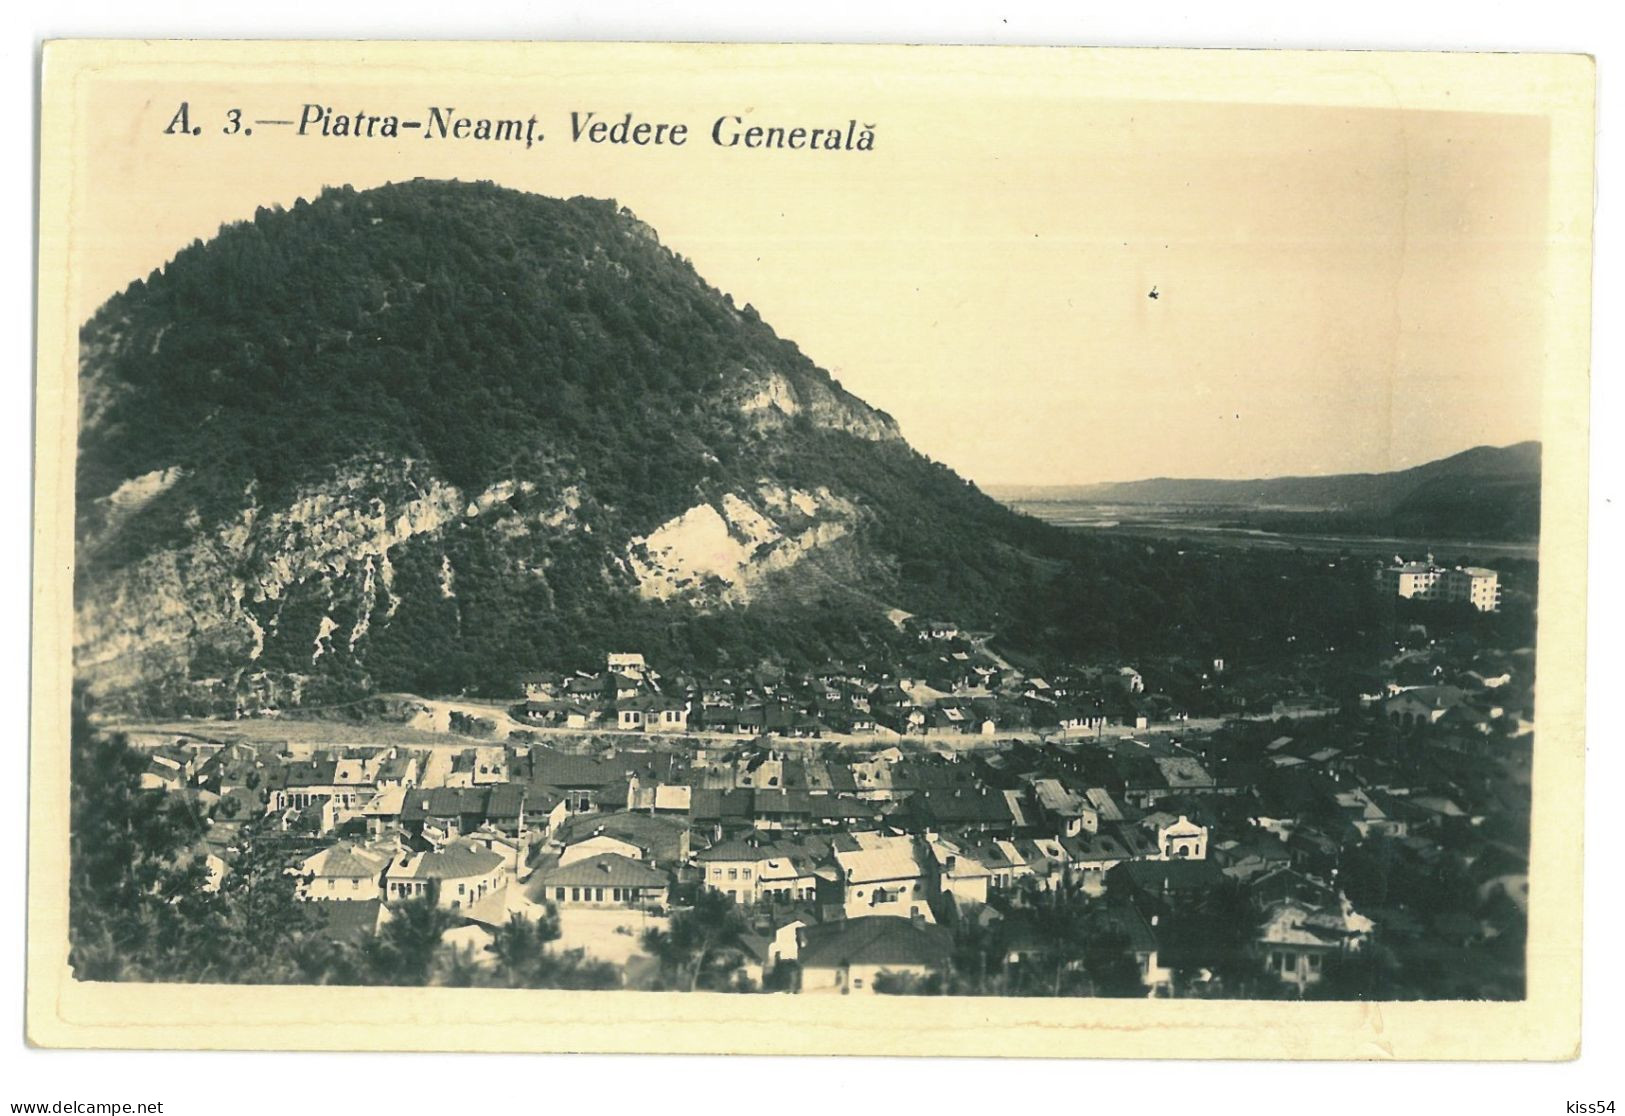 RO 47 - 23724 PIATRA NEAMT, Panorama, Romania - Old Postcard - Used - 1941 - Romania